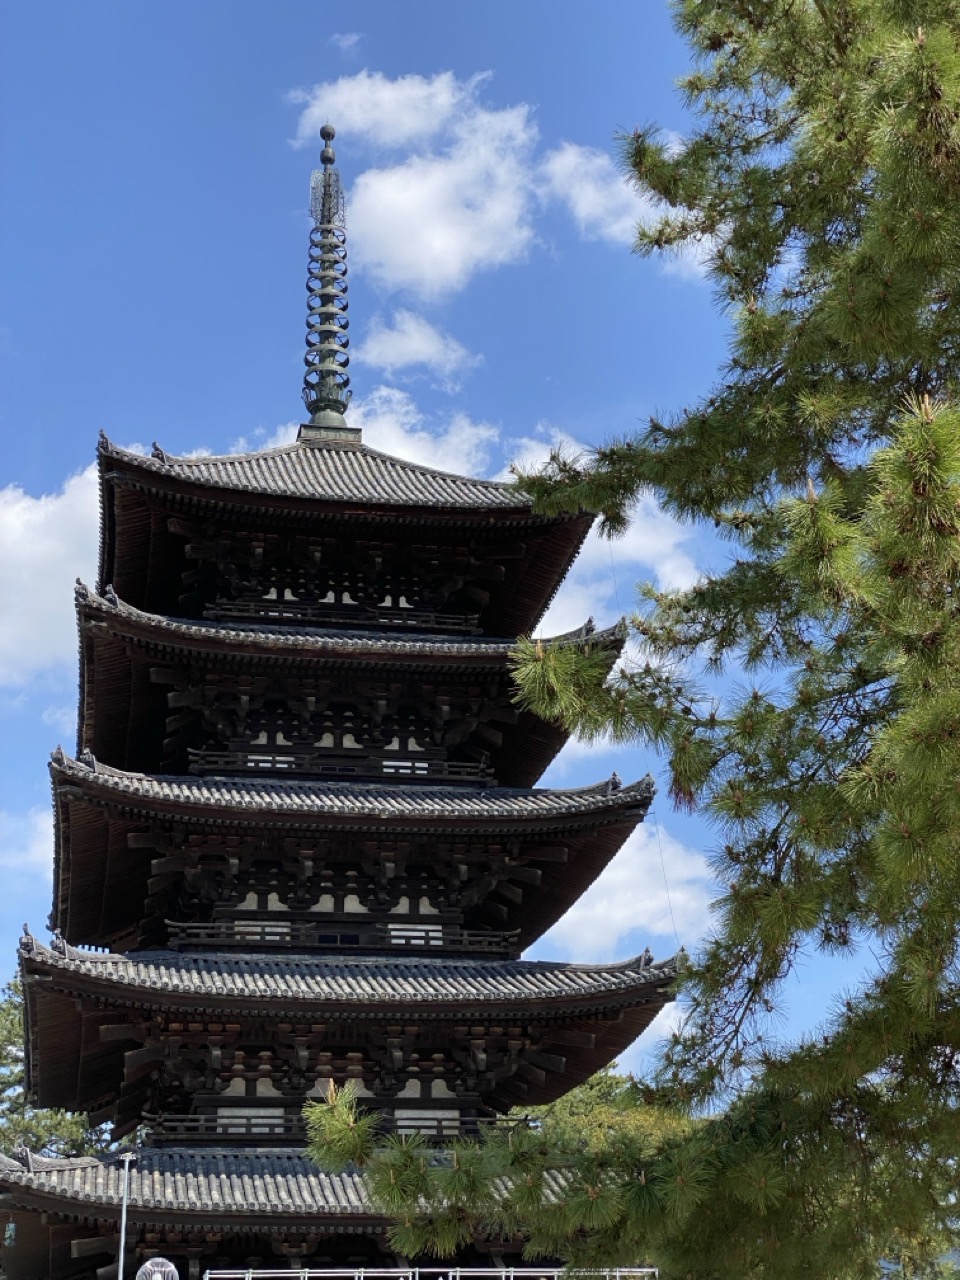 A pagoda in the sunshine